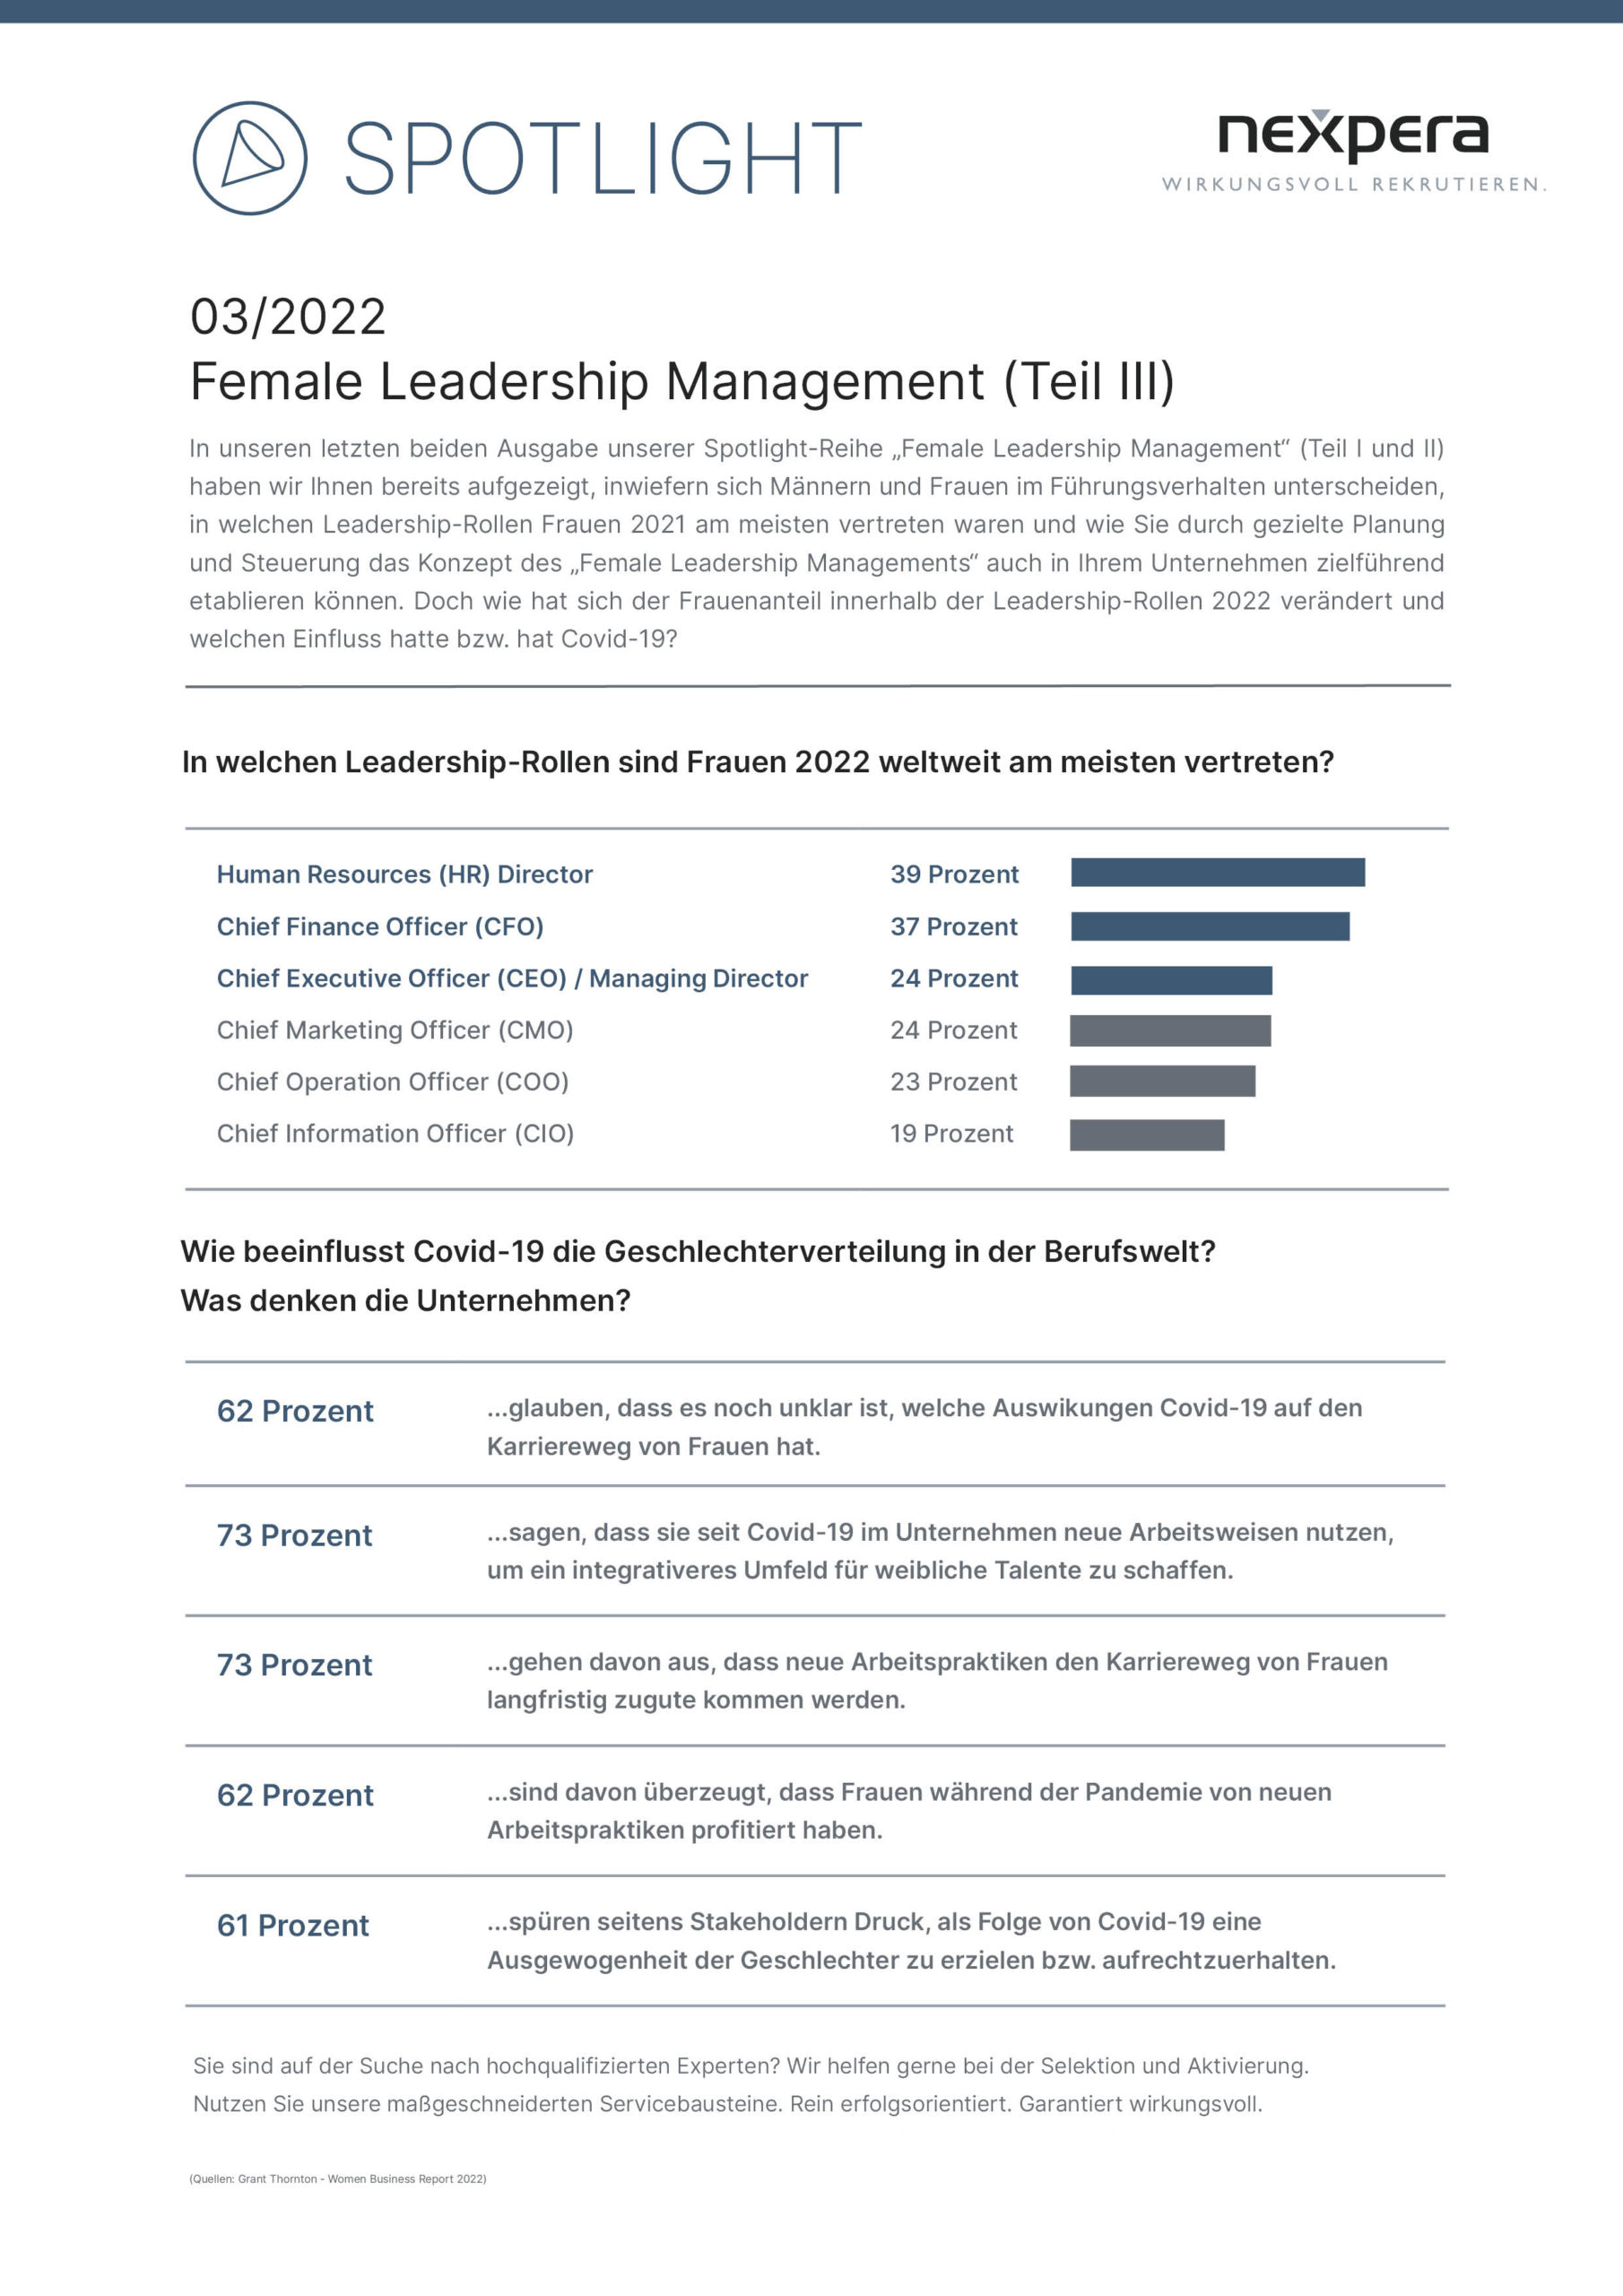 Spotlight Female Leadership Management Teil III